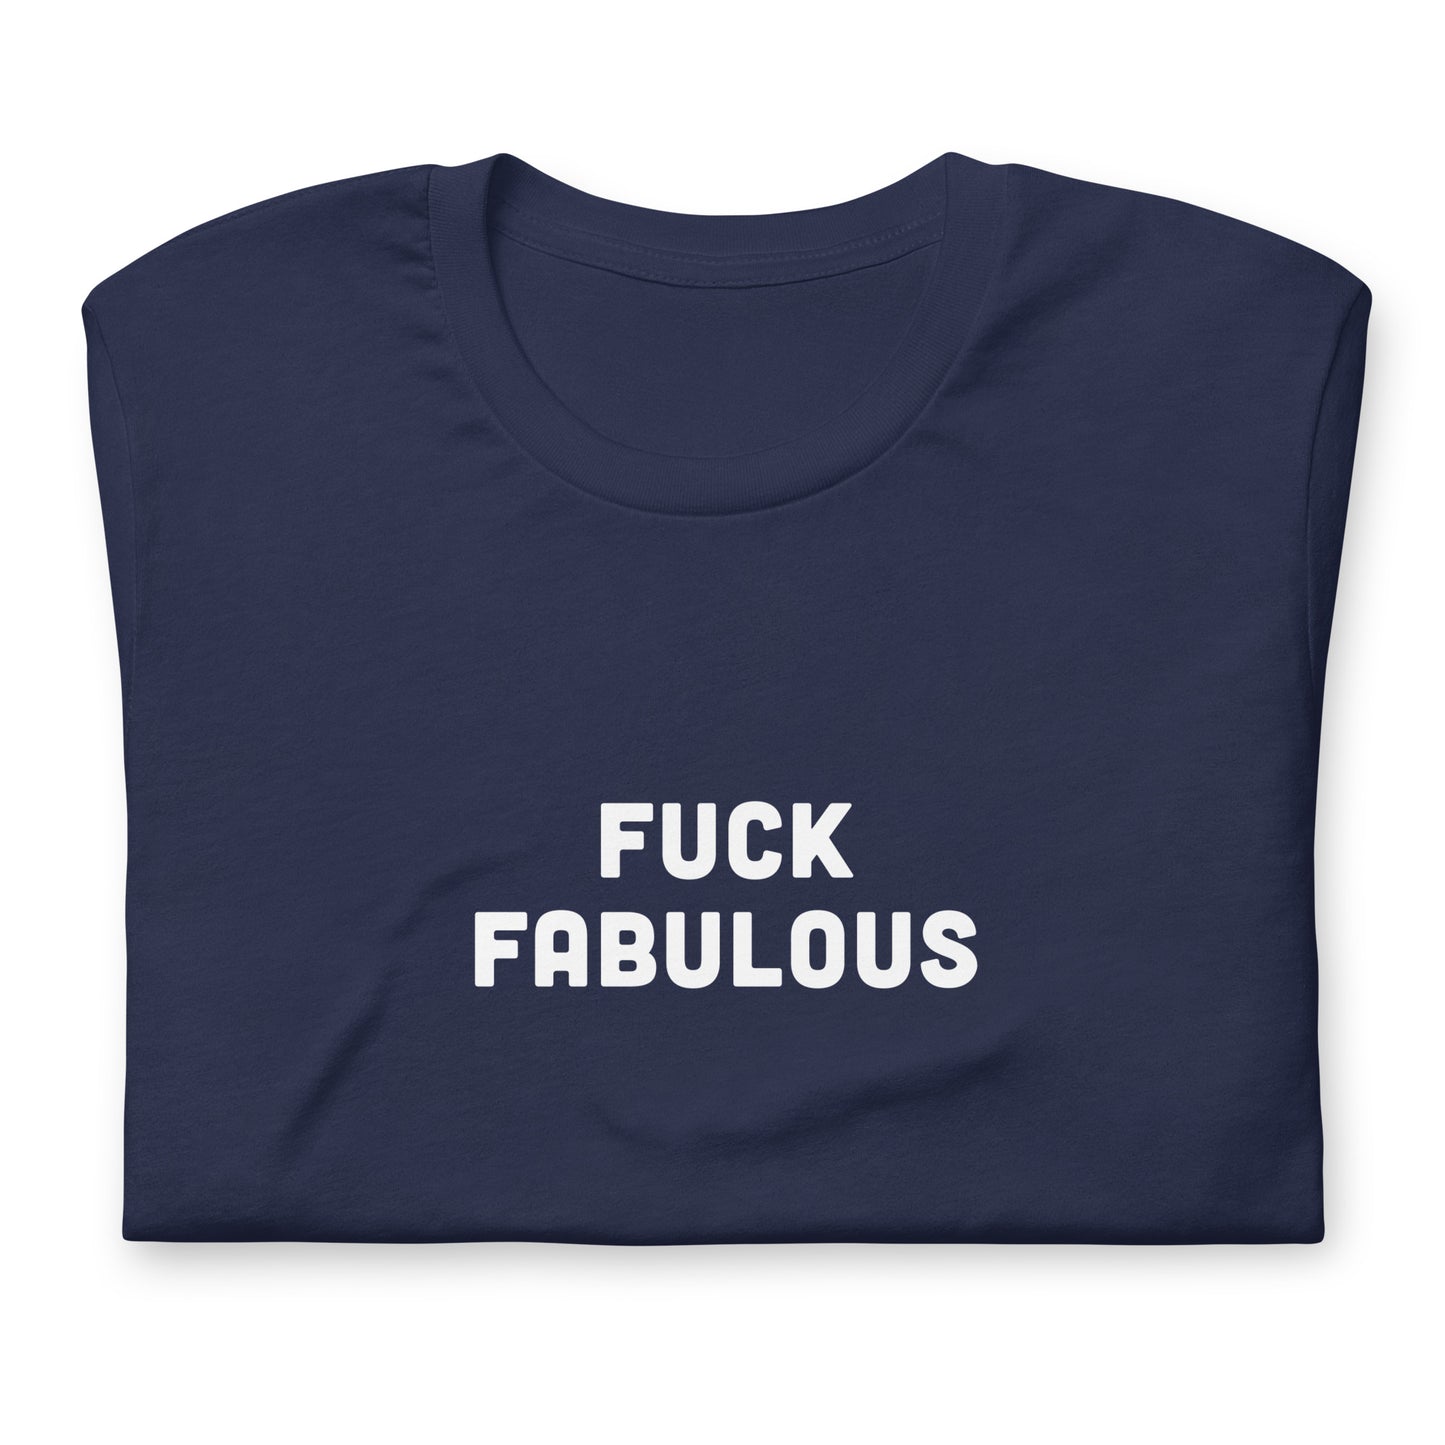 Fuck Fabulous T-Shirt Size L Color Black